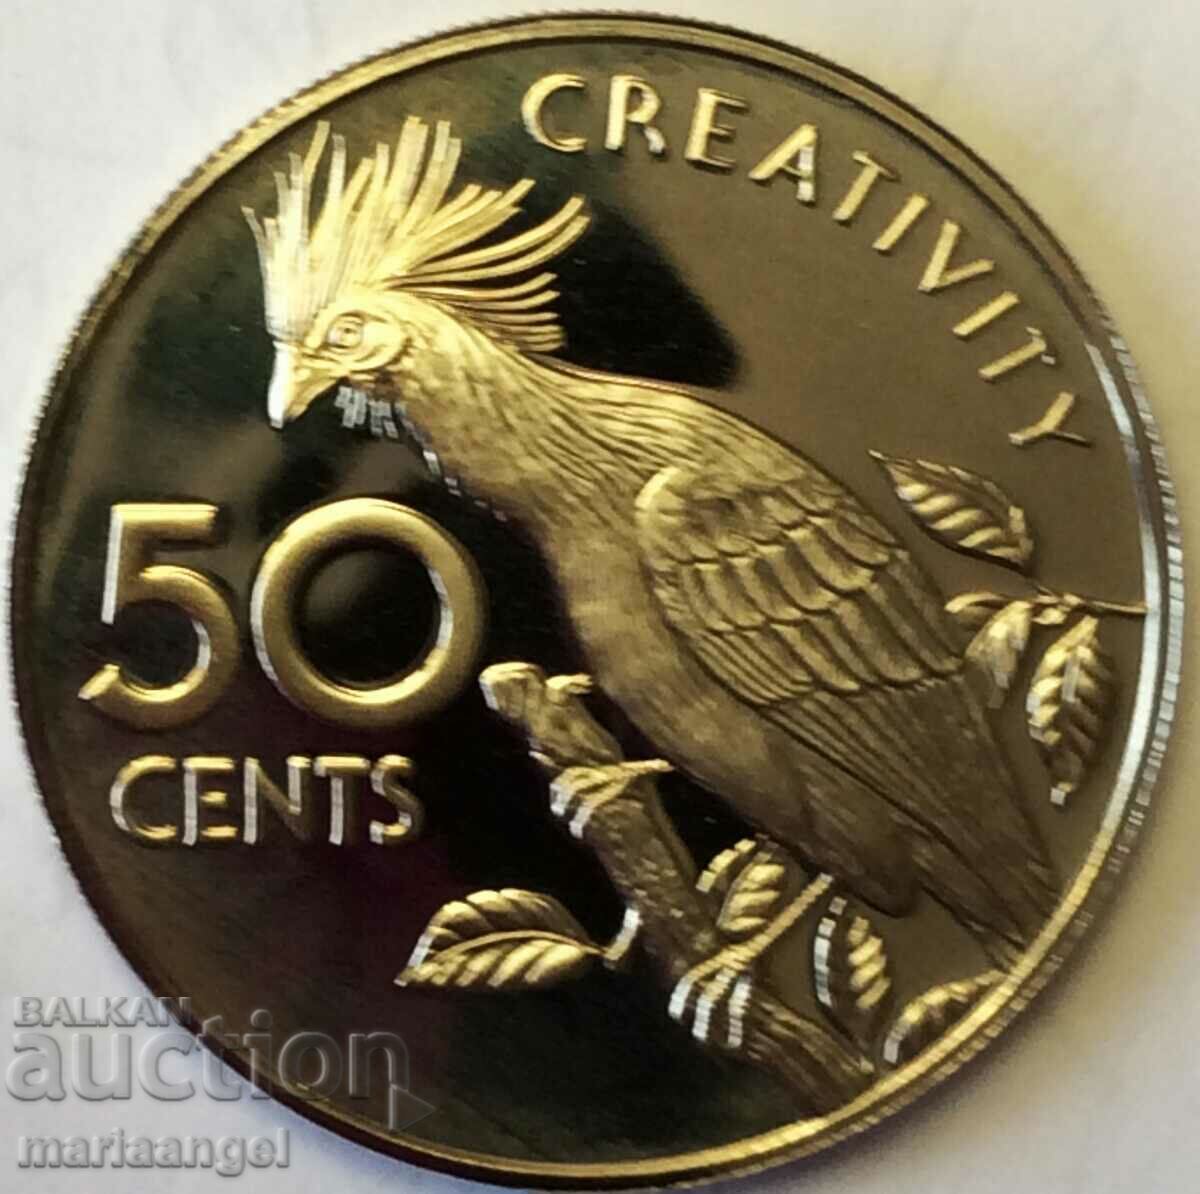 Гвиана 50 цента 1978 минт 5044 бр UNC PROOF Rare